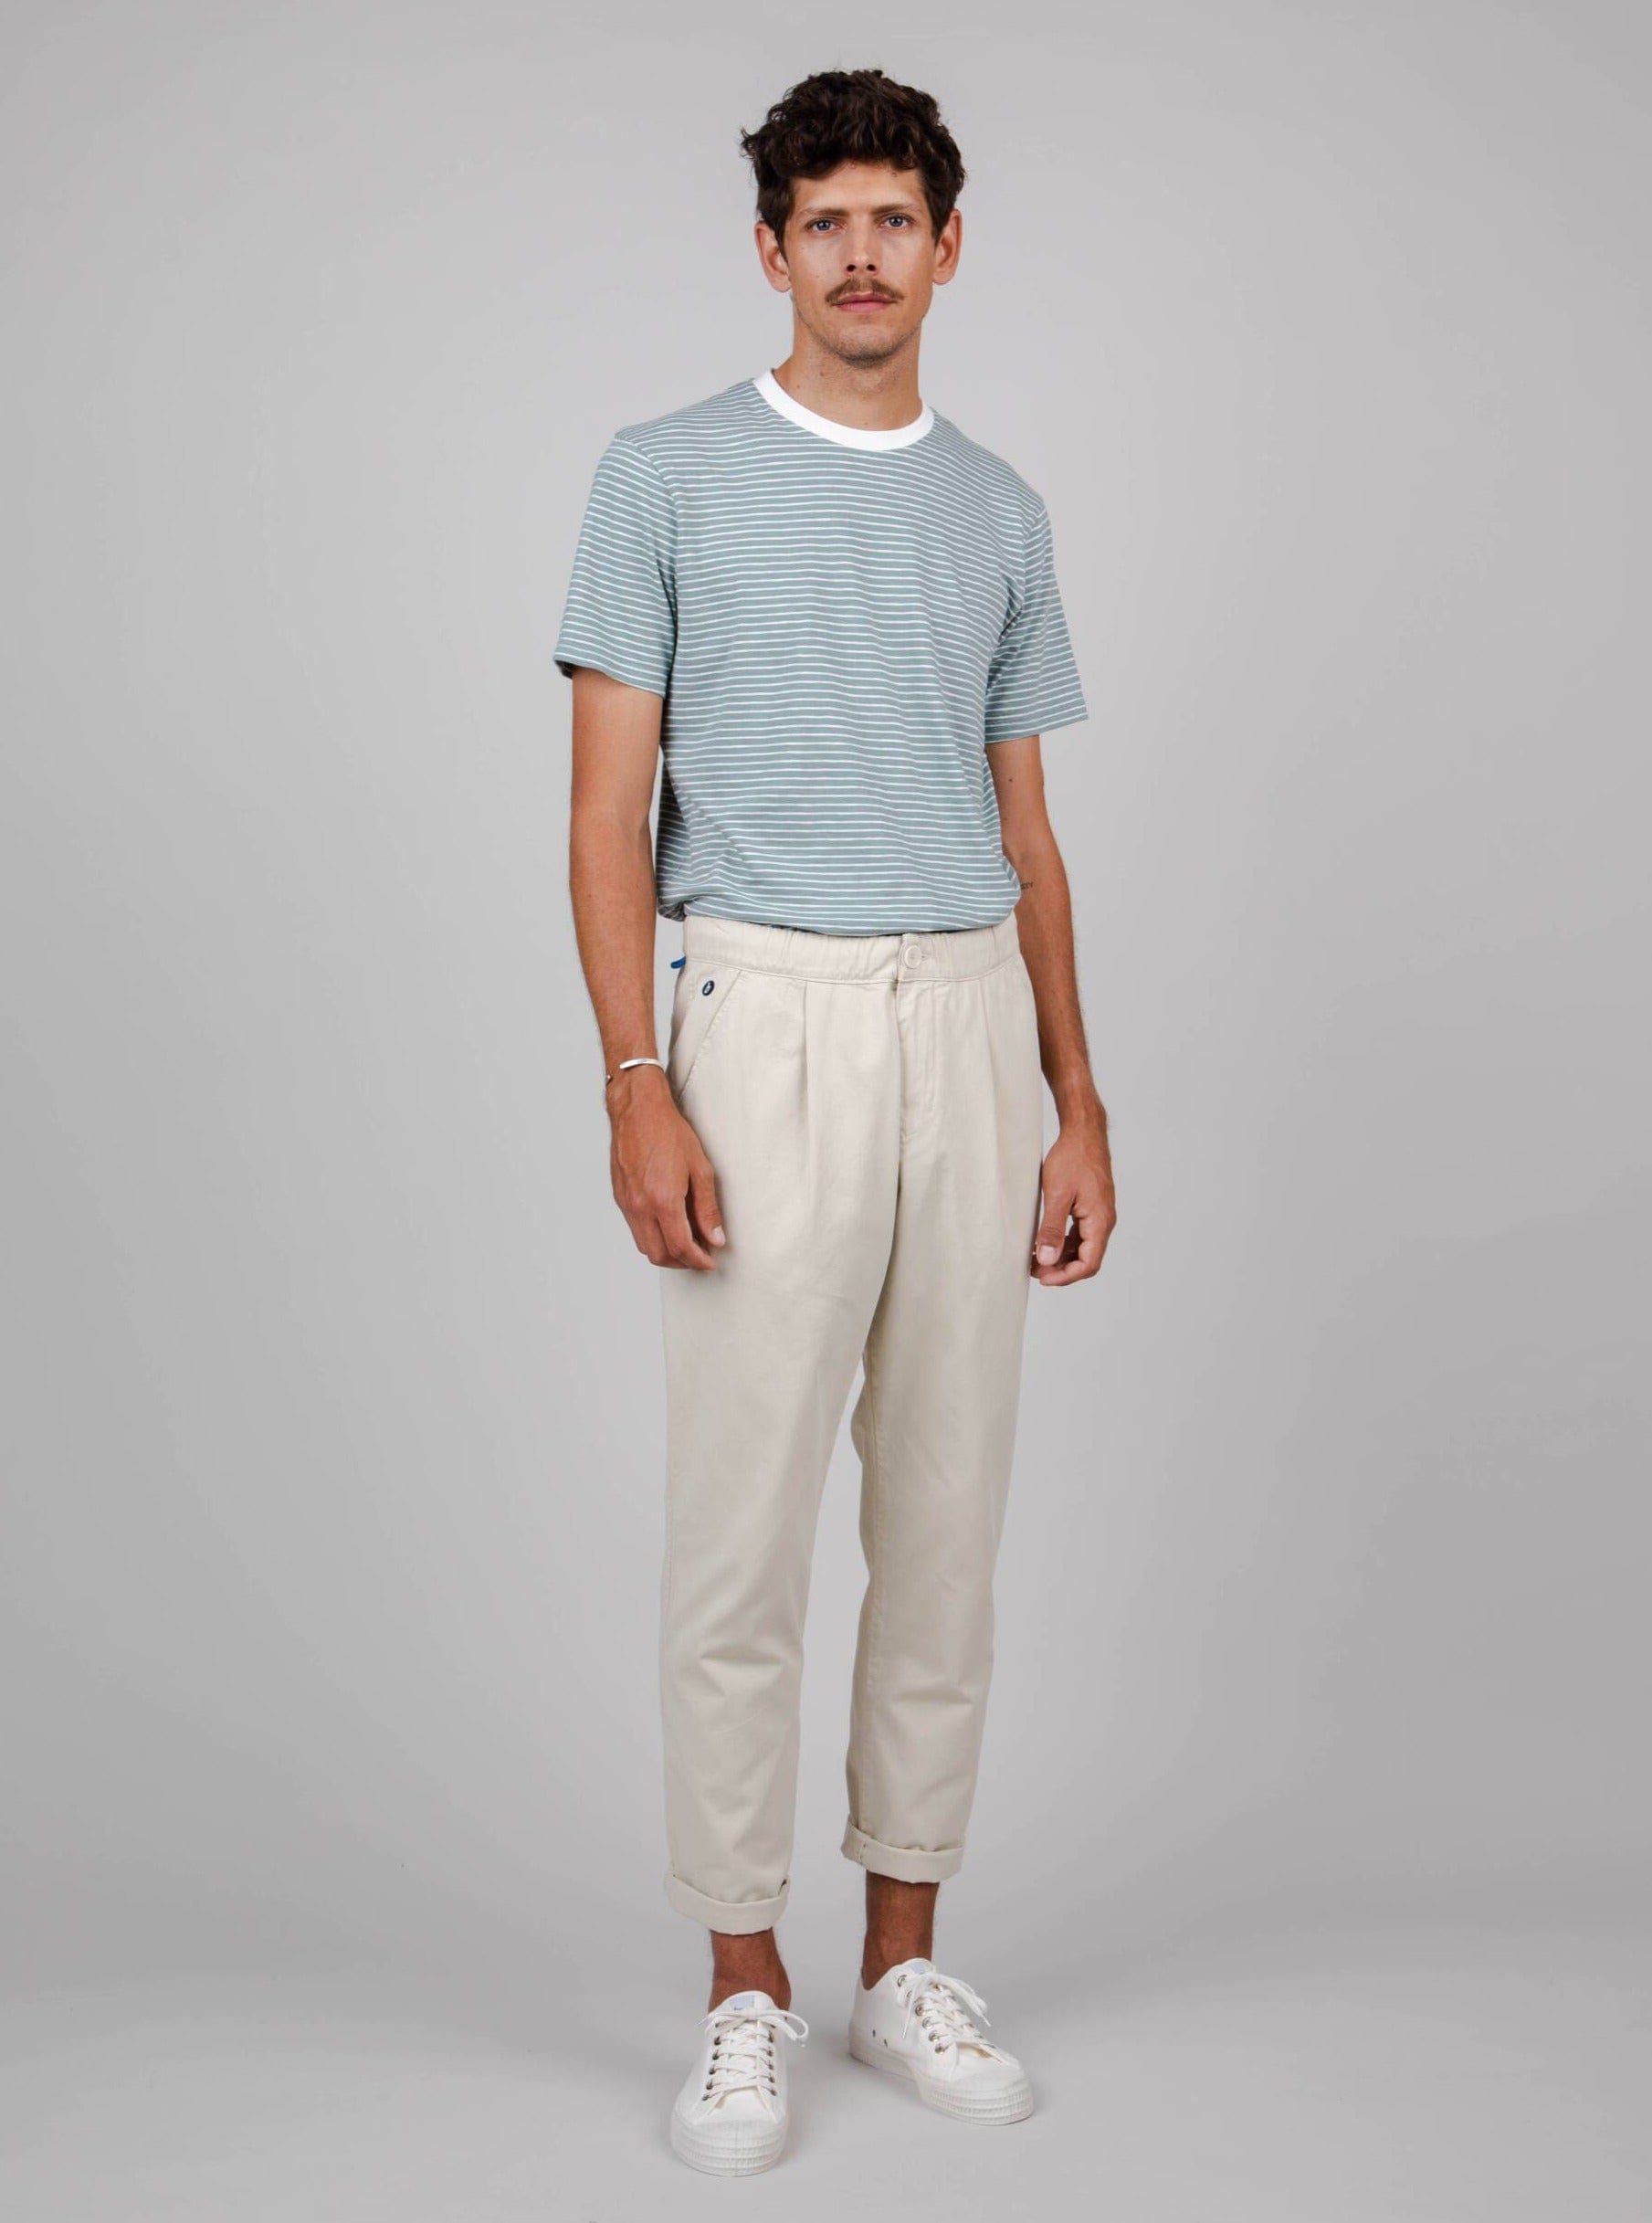 Pantalón Brava Fabrics Comfort Chino Sand de Algodón Orgánico moda sostenible moda ética